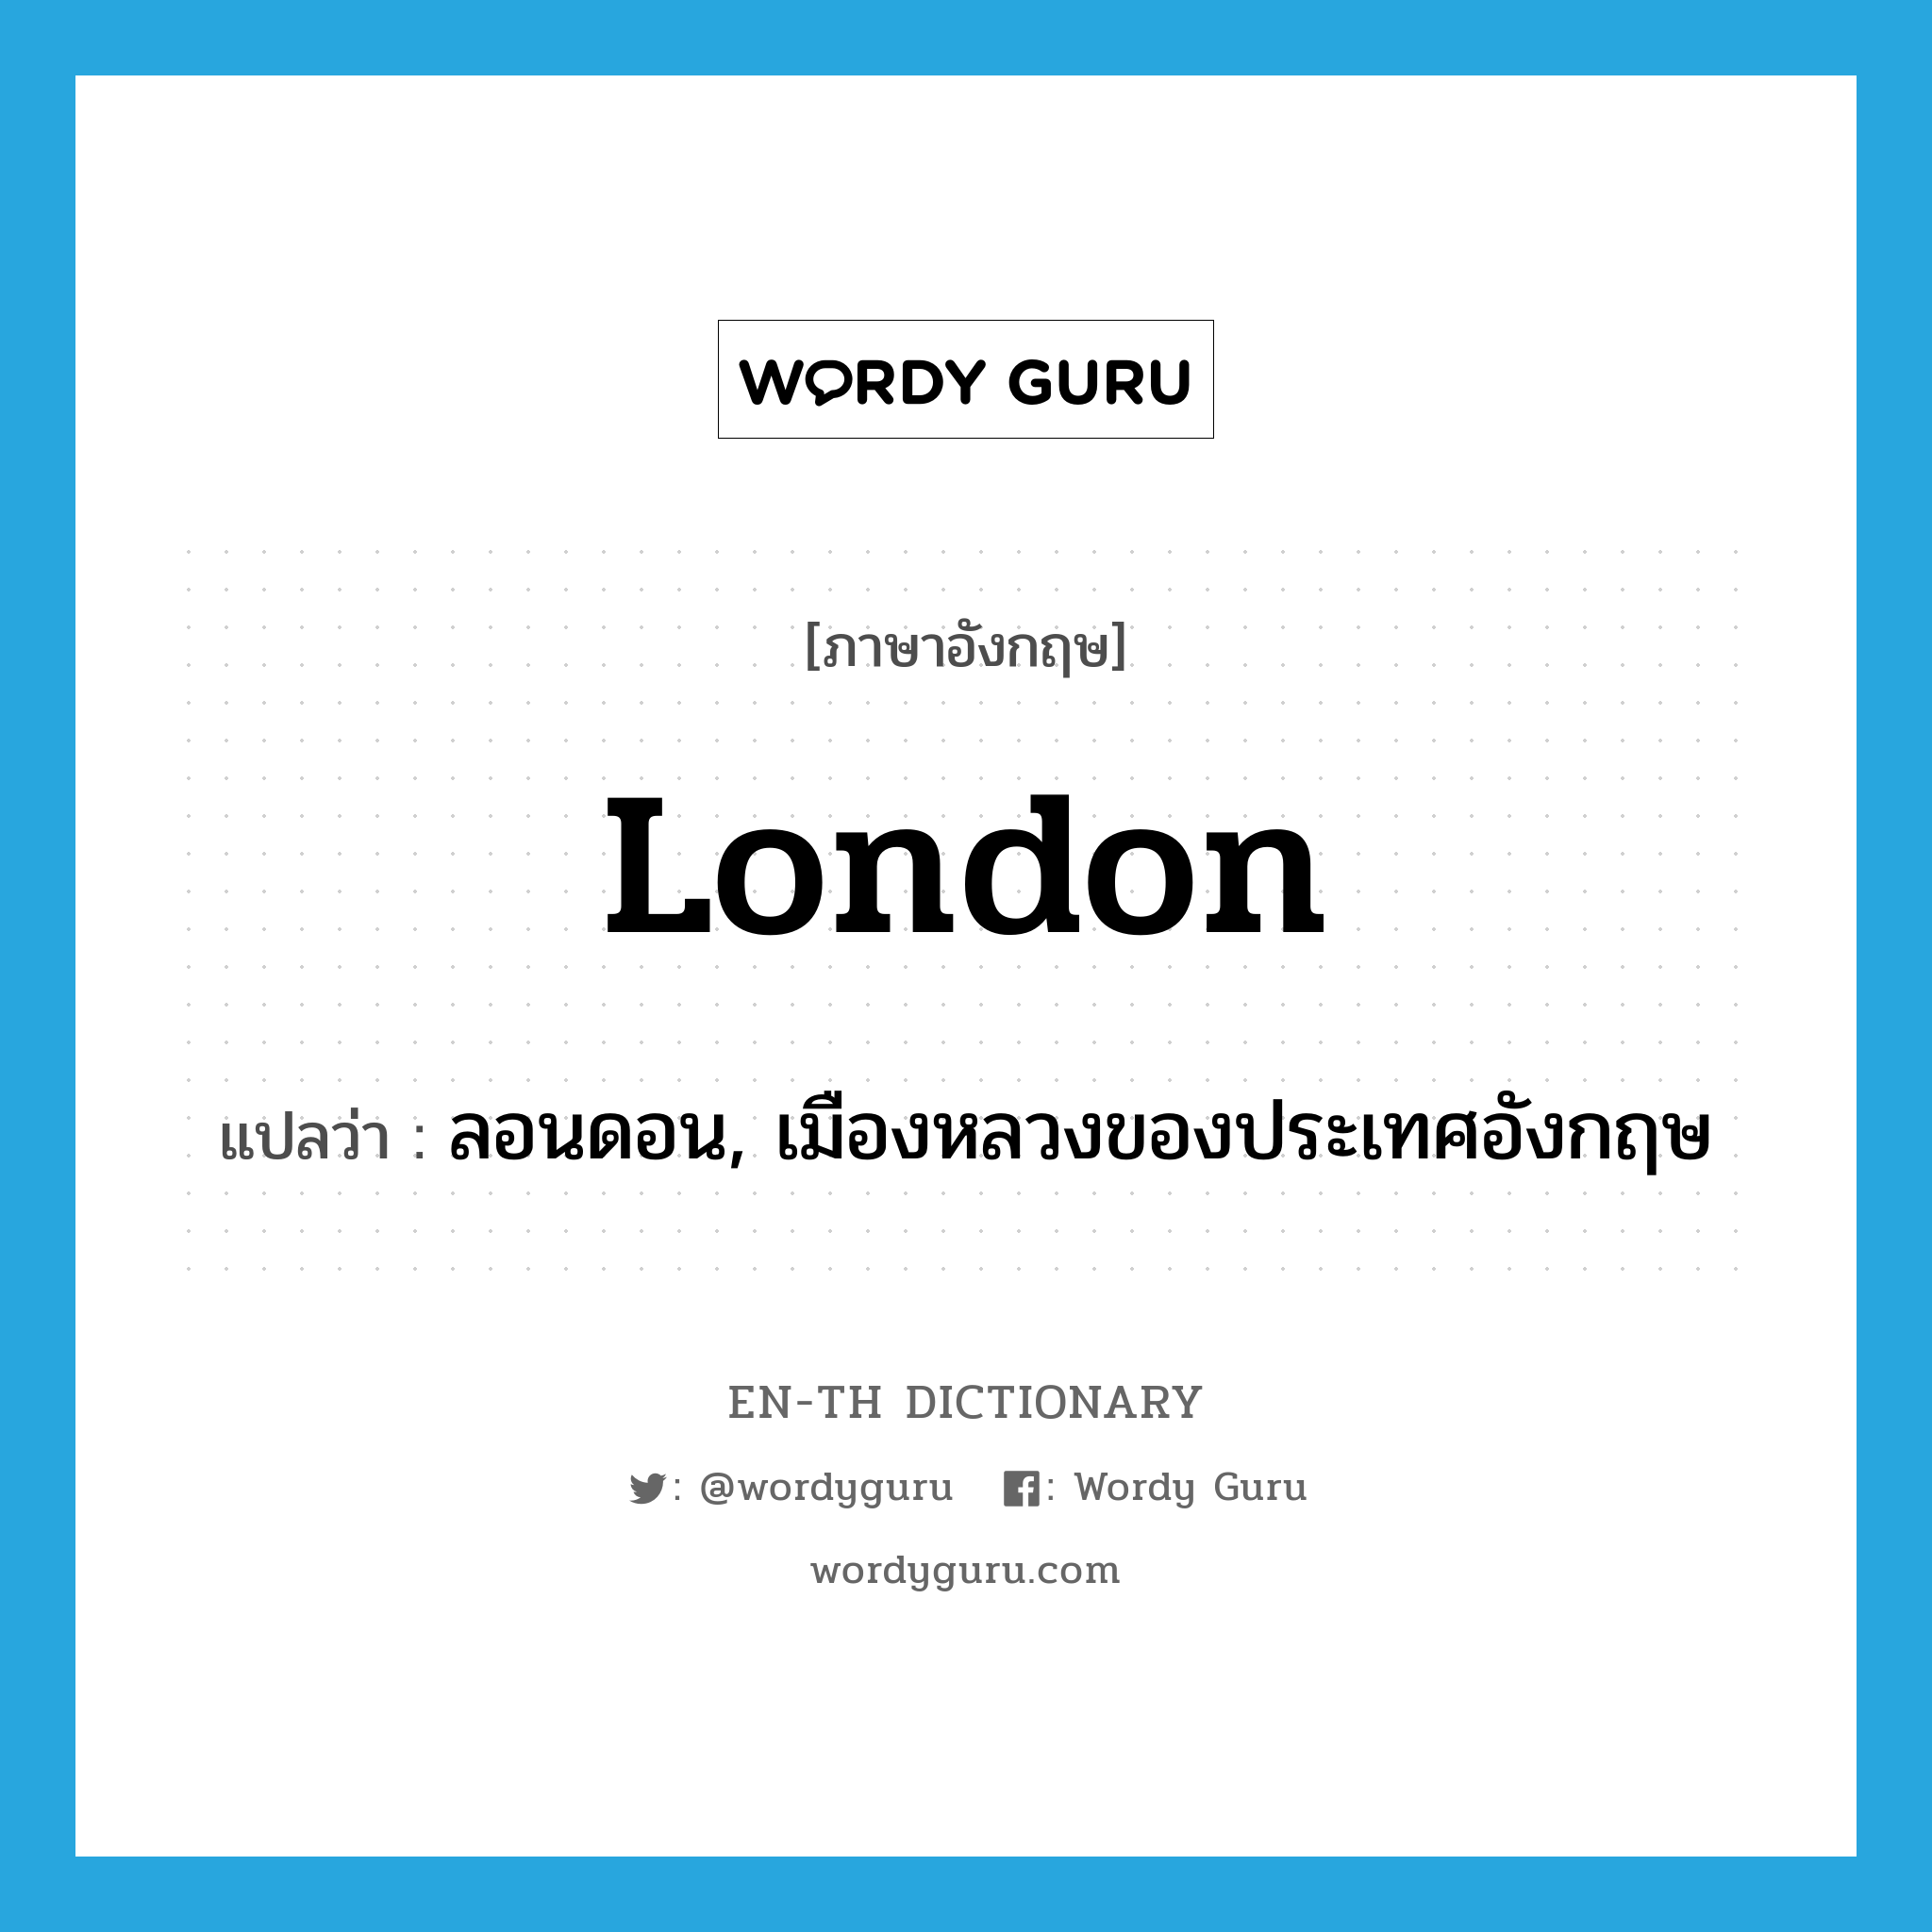 ลอนดอน, เมืองหลวงของประเทศอังกฤษ ภาษาอังกฤษ?, คำศัพท์ภาษาอังกฤษ ลอนดอน, เมืองหลวงของประเทศอังกฤษ แปลว่า London ประเภท N หมวด N